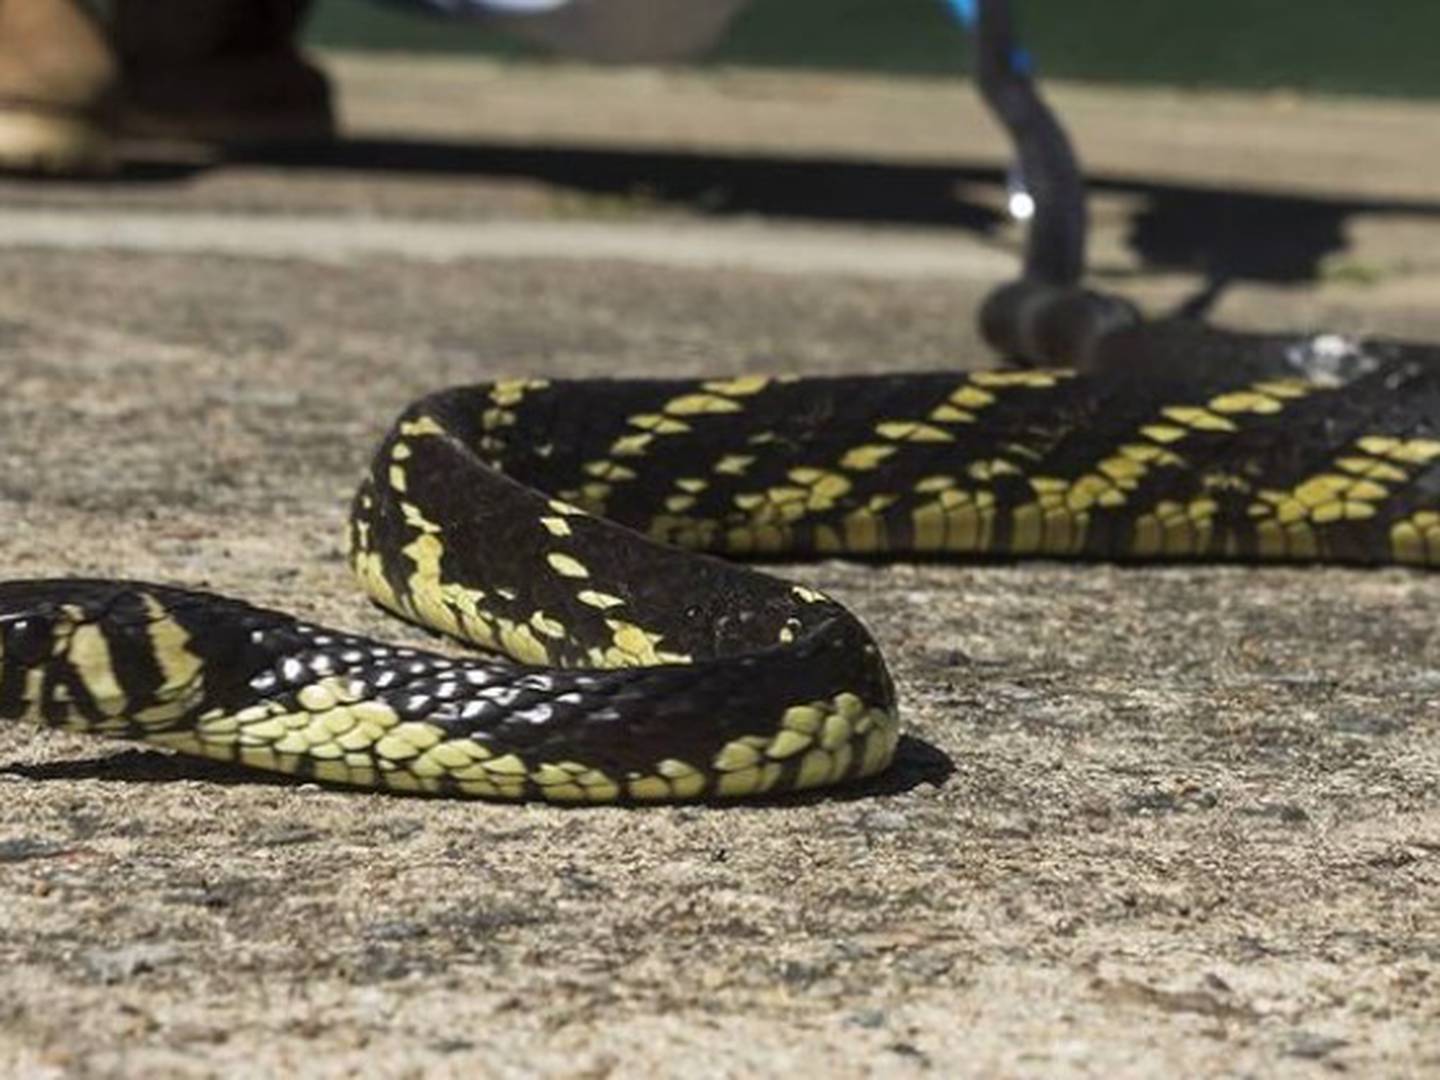 Mitos e Verdades sobre as serpentes - Parque Ecológico Imigrantes